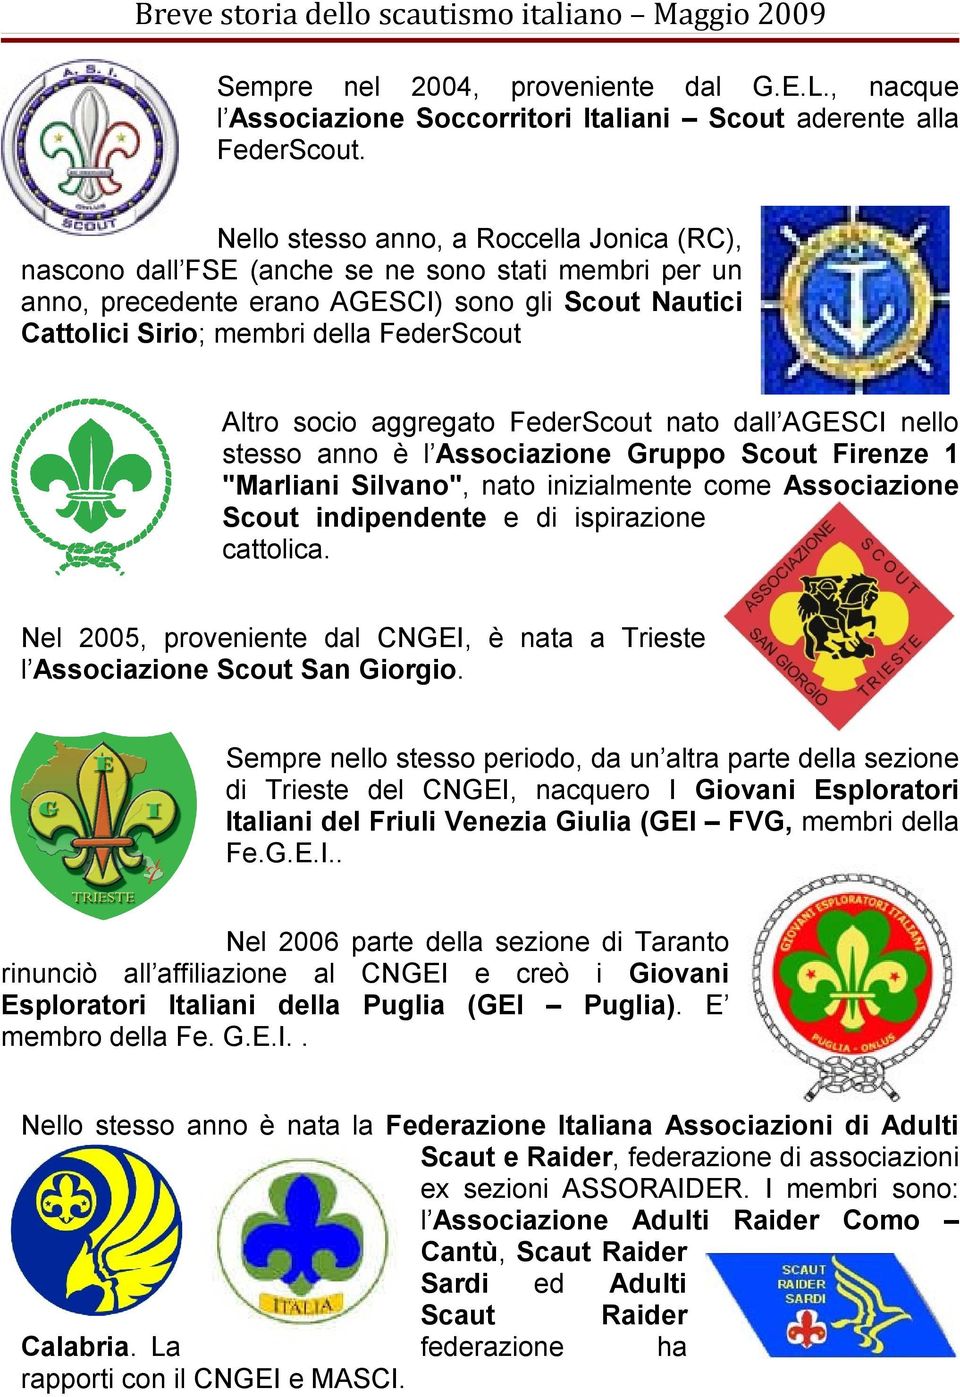 socio aggregato FederScout nato dall AGESCI nello stesso anno è l Associazione Gruppo Scout Firenze 1 "Marliani Silvano", nato inizialmente come Associazione Scout indipendente e di ispirazione